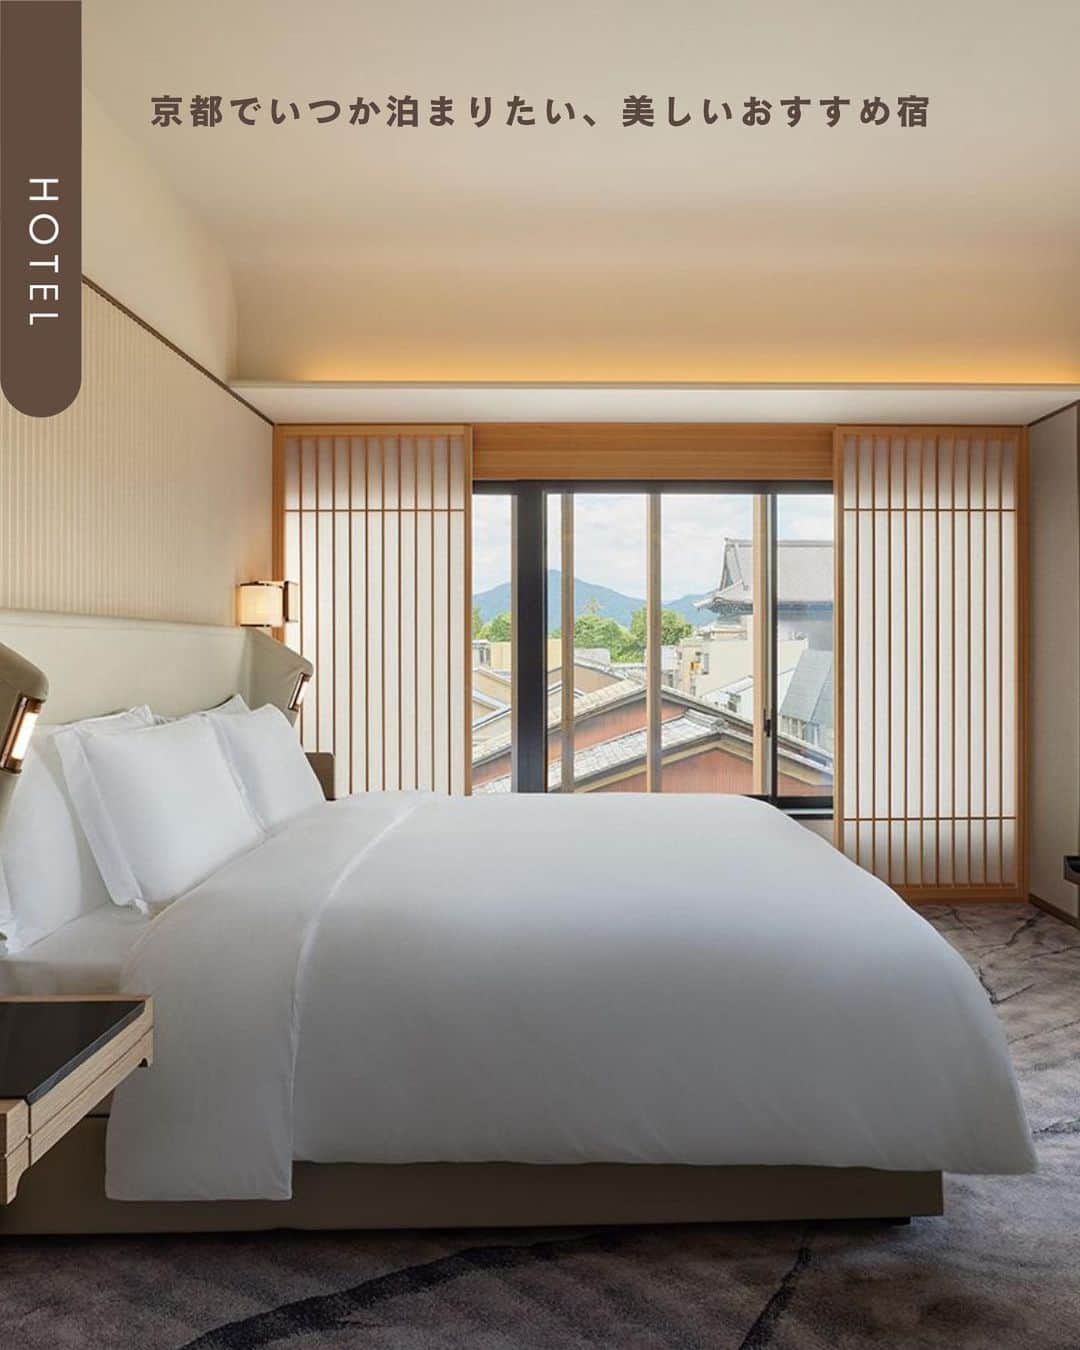 ELLE DECOR JAPANのインスタグラム：「京都にある数えきれないほどの宿のなかから、新規開業を中心に、いつかは泊まりたいスタイリッシュなホテルや旅館をまとめてラインナップ。  ・たま靑 2023年夏にオープンした小さなシャンブルドット（B＆B）。さまざまなショップやホテルを手がけてきた注目の設計事務所「FHAMS（ファムス）」がデザインした宿。  ・デュシタニ京都 タイのホテル・不動産開発大手「デュシット・インターナショナル」が手がけるラグジュアリーホテル「デュシタニ京都」が、2023年9月に日本上陸。  ・6ishiki（ムイシキ） “霧の街”とも呼ばれる京都府亀岡市に立つ、築100年の古民家。ここをリノベートして2022年12月に開業した、一日1組限定の貸別荘スタイルの宿。  ・リーガプレイス京都 四条烏丸 2023年4月に開業。地下鉄四条駅・阪急烏丸駅からすぐの便利な場所に立つ、「リーガロイヤルホテルグループ」が京都市内に展開する3軒目のホテル。  #京都旅行 #京都 #京都ホテル #kyoto #kyotohotel #デザインホテル #京都おしゃれホテル #おしゃれホテル #たま靑 #デュシタニ京都 #6ishiki #リーガプレイス京都 四条烏丸」